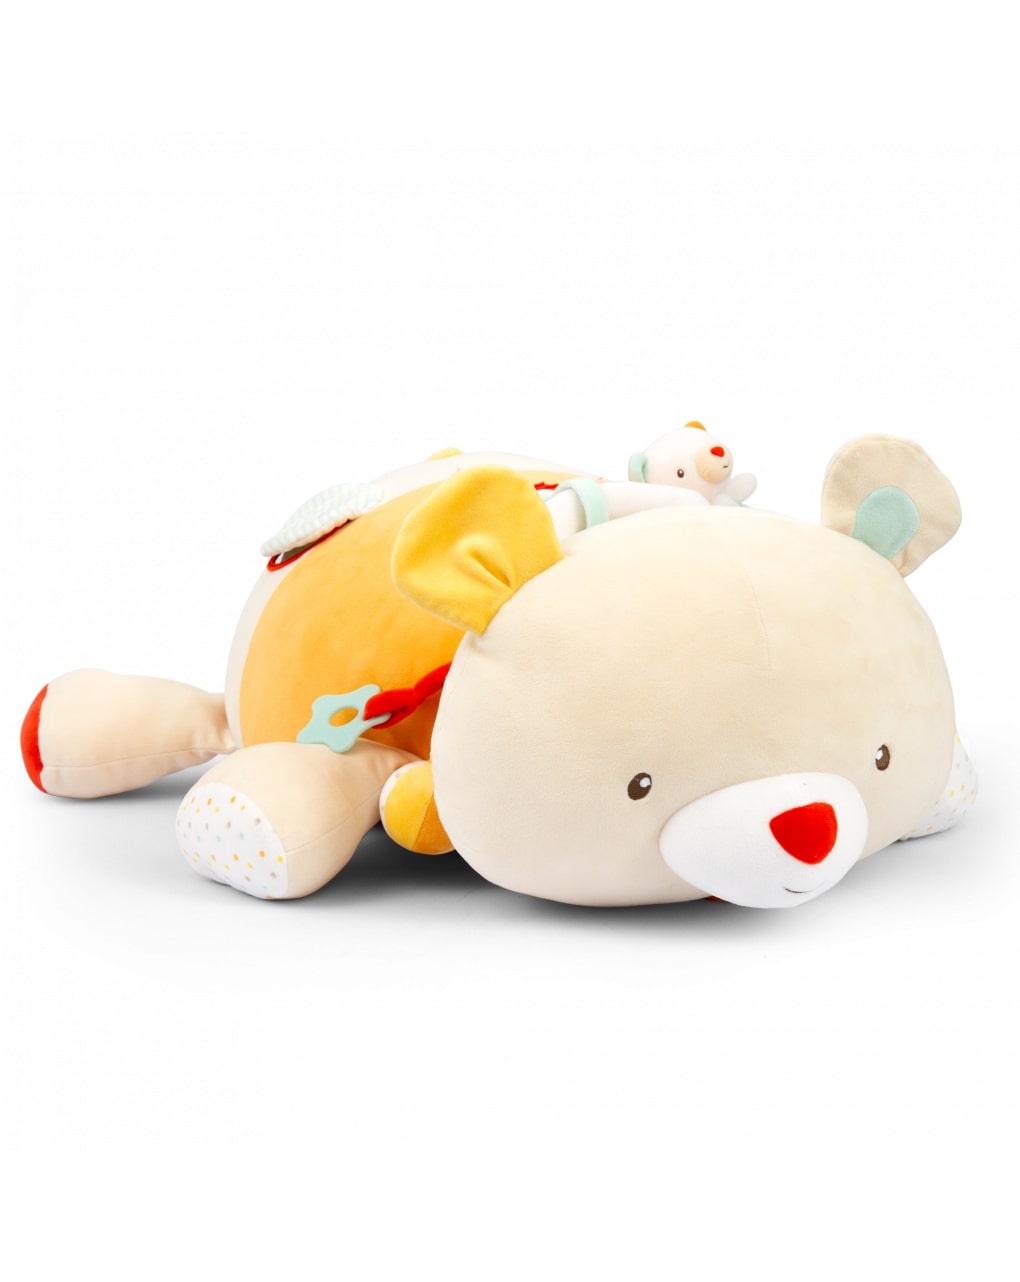 μαλακό παιχνίδι-λούτρινο maxi αρκουδάκι με δραστηριότητες unisex - Baby Smile